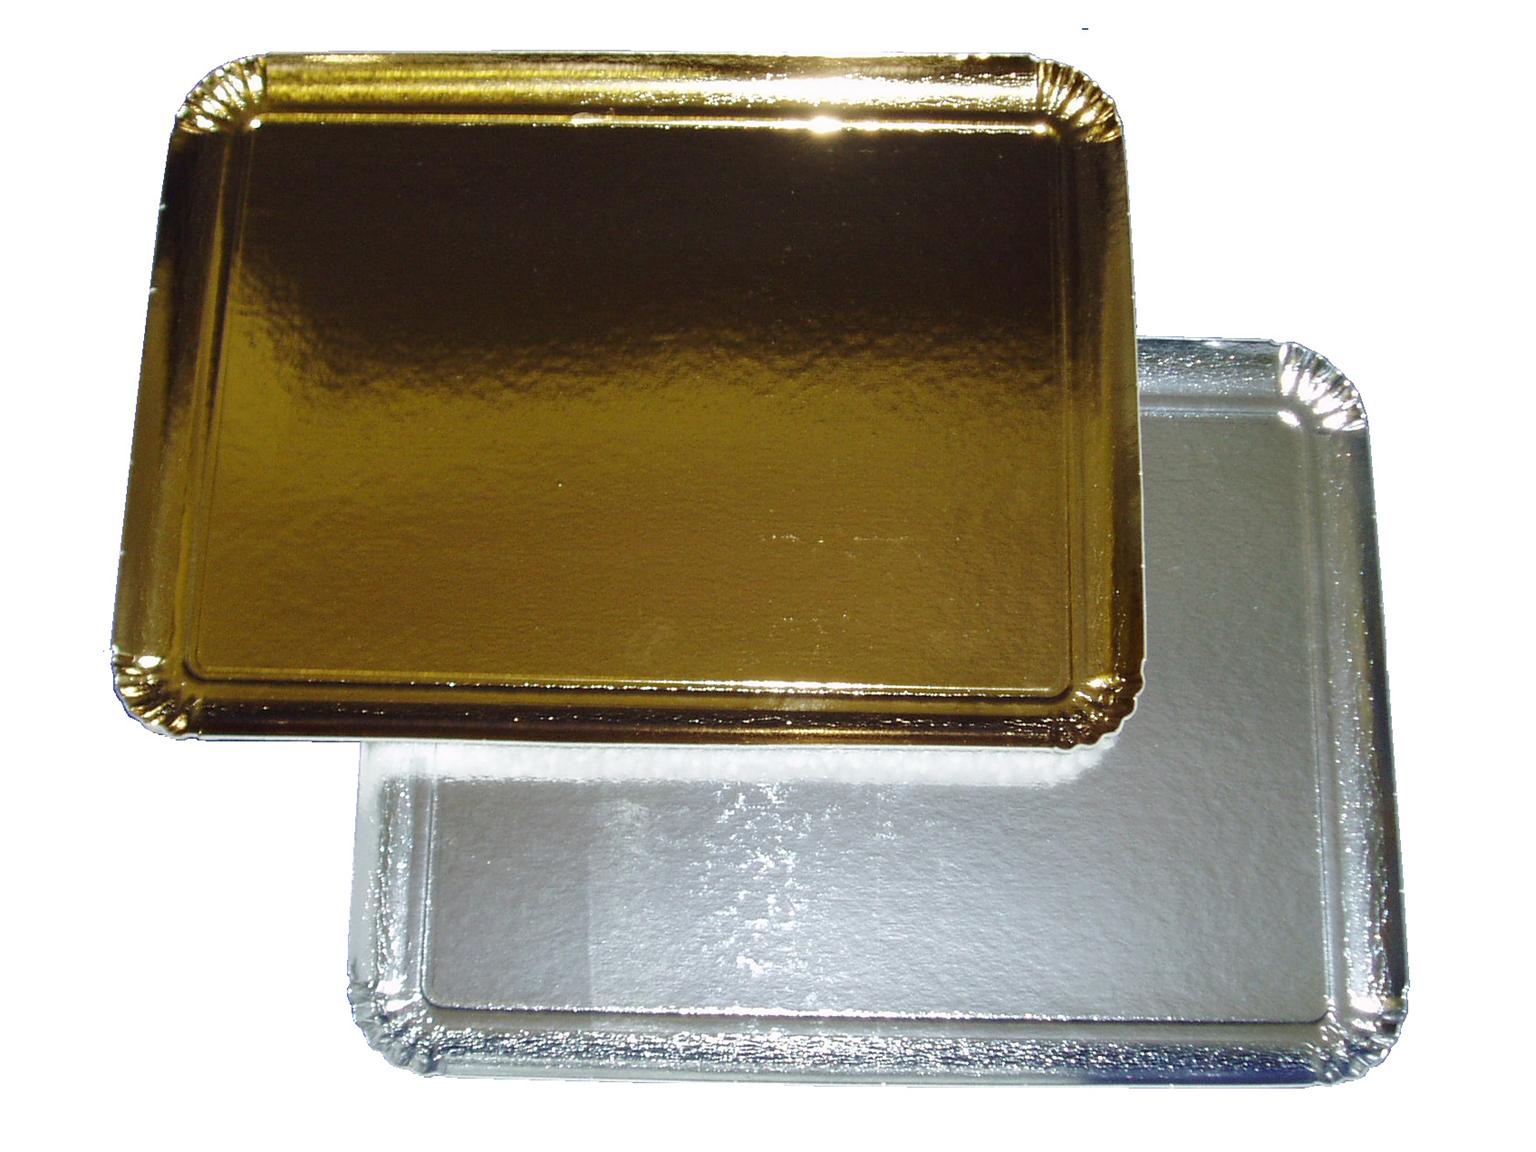 SERVIERPLATTEN GOLD  19 x 28 cm eckig, gold